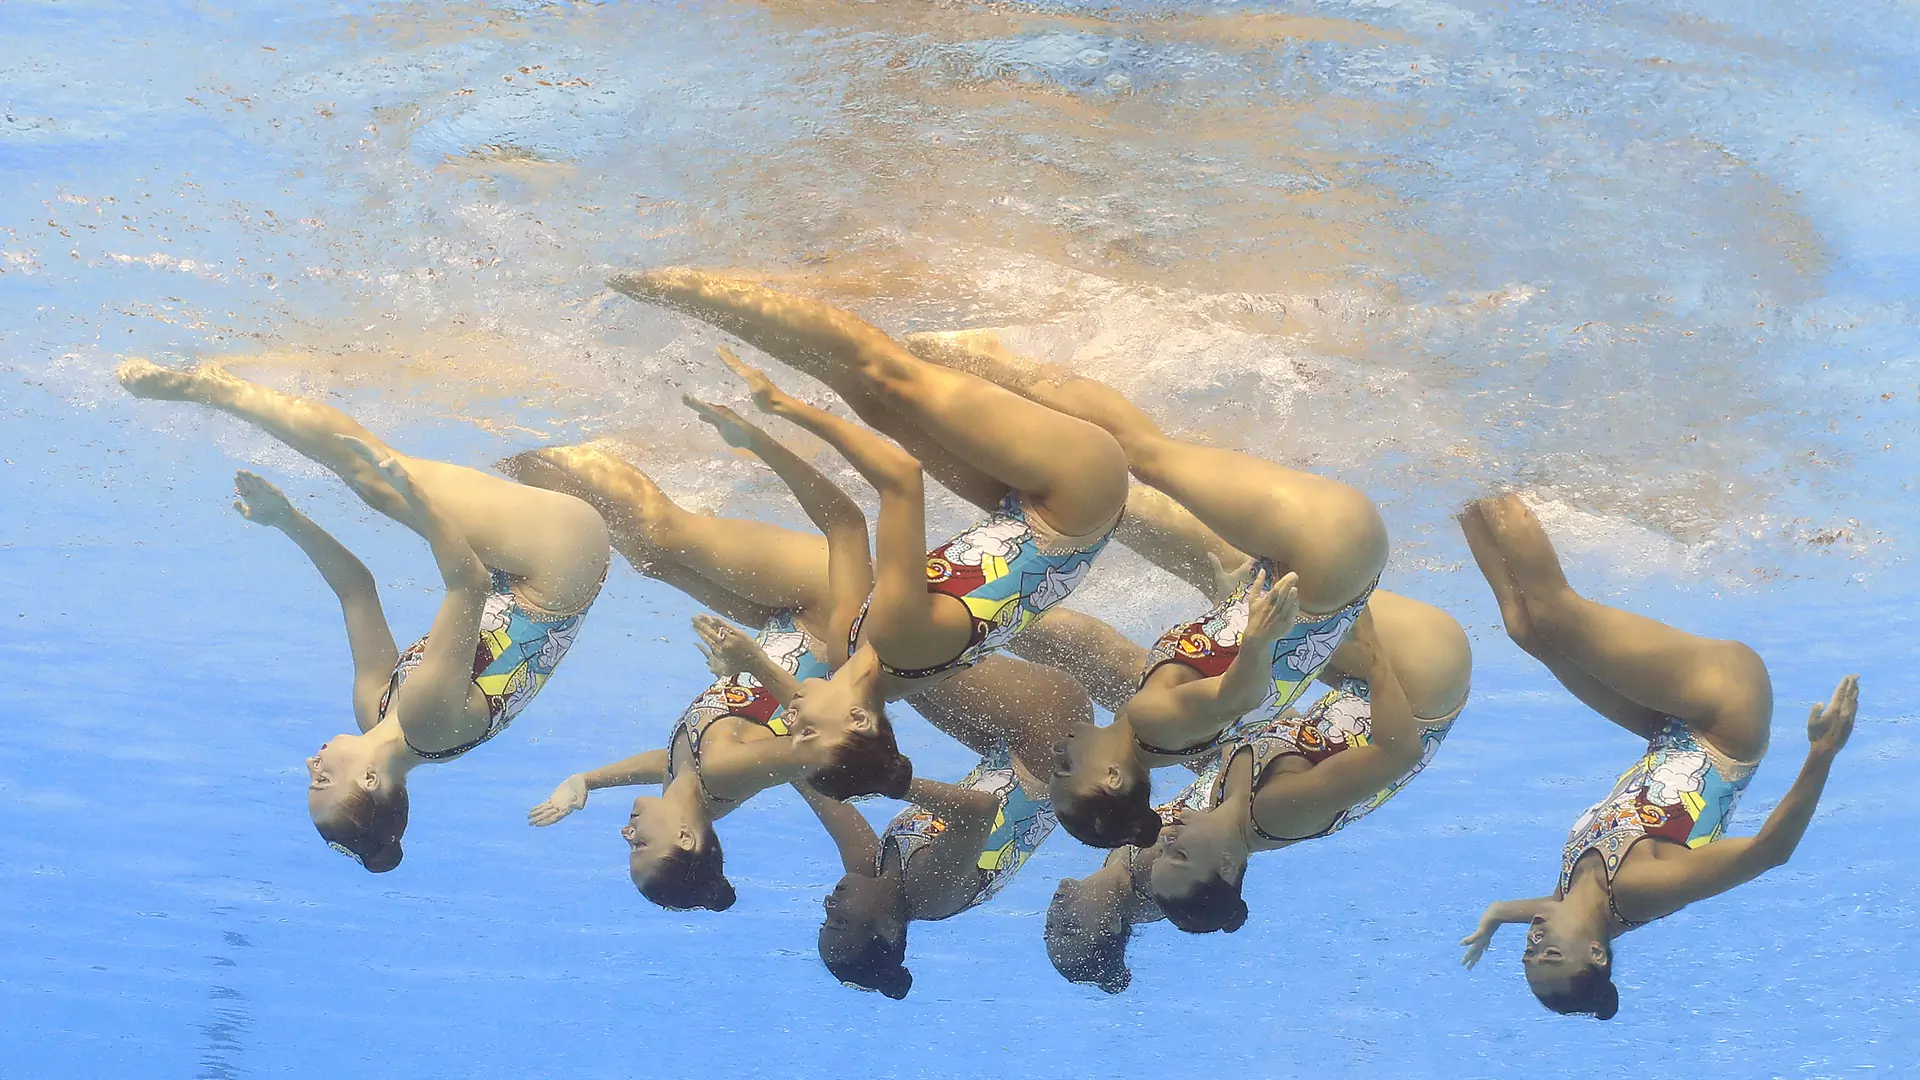 Mężczyźni dopuszczeni do dyscypliny olimpijskiej zarezerwowanej dla kobiet. "Sporty wodne są uniwersalne"